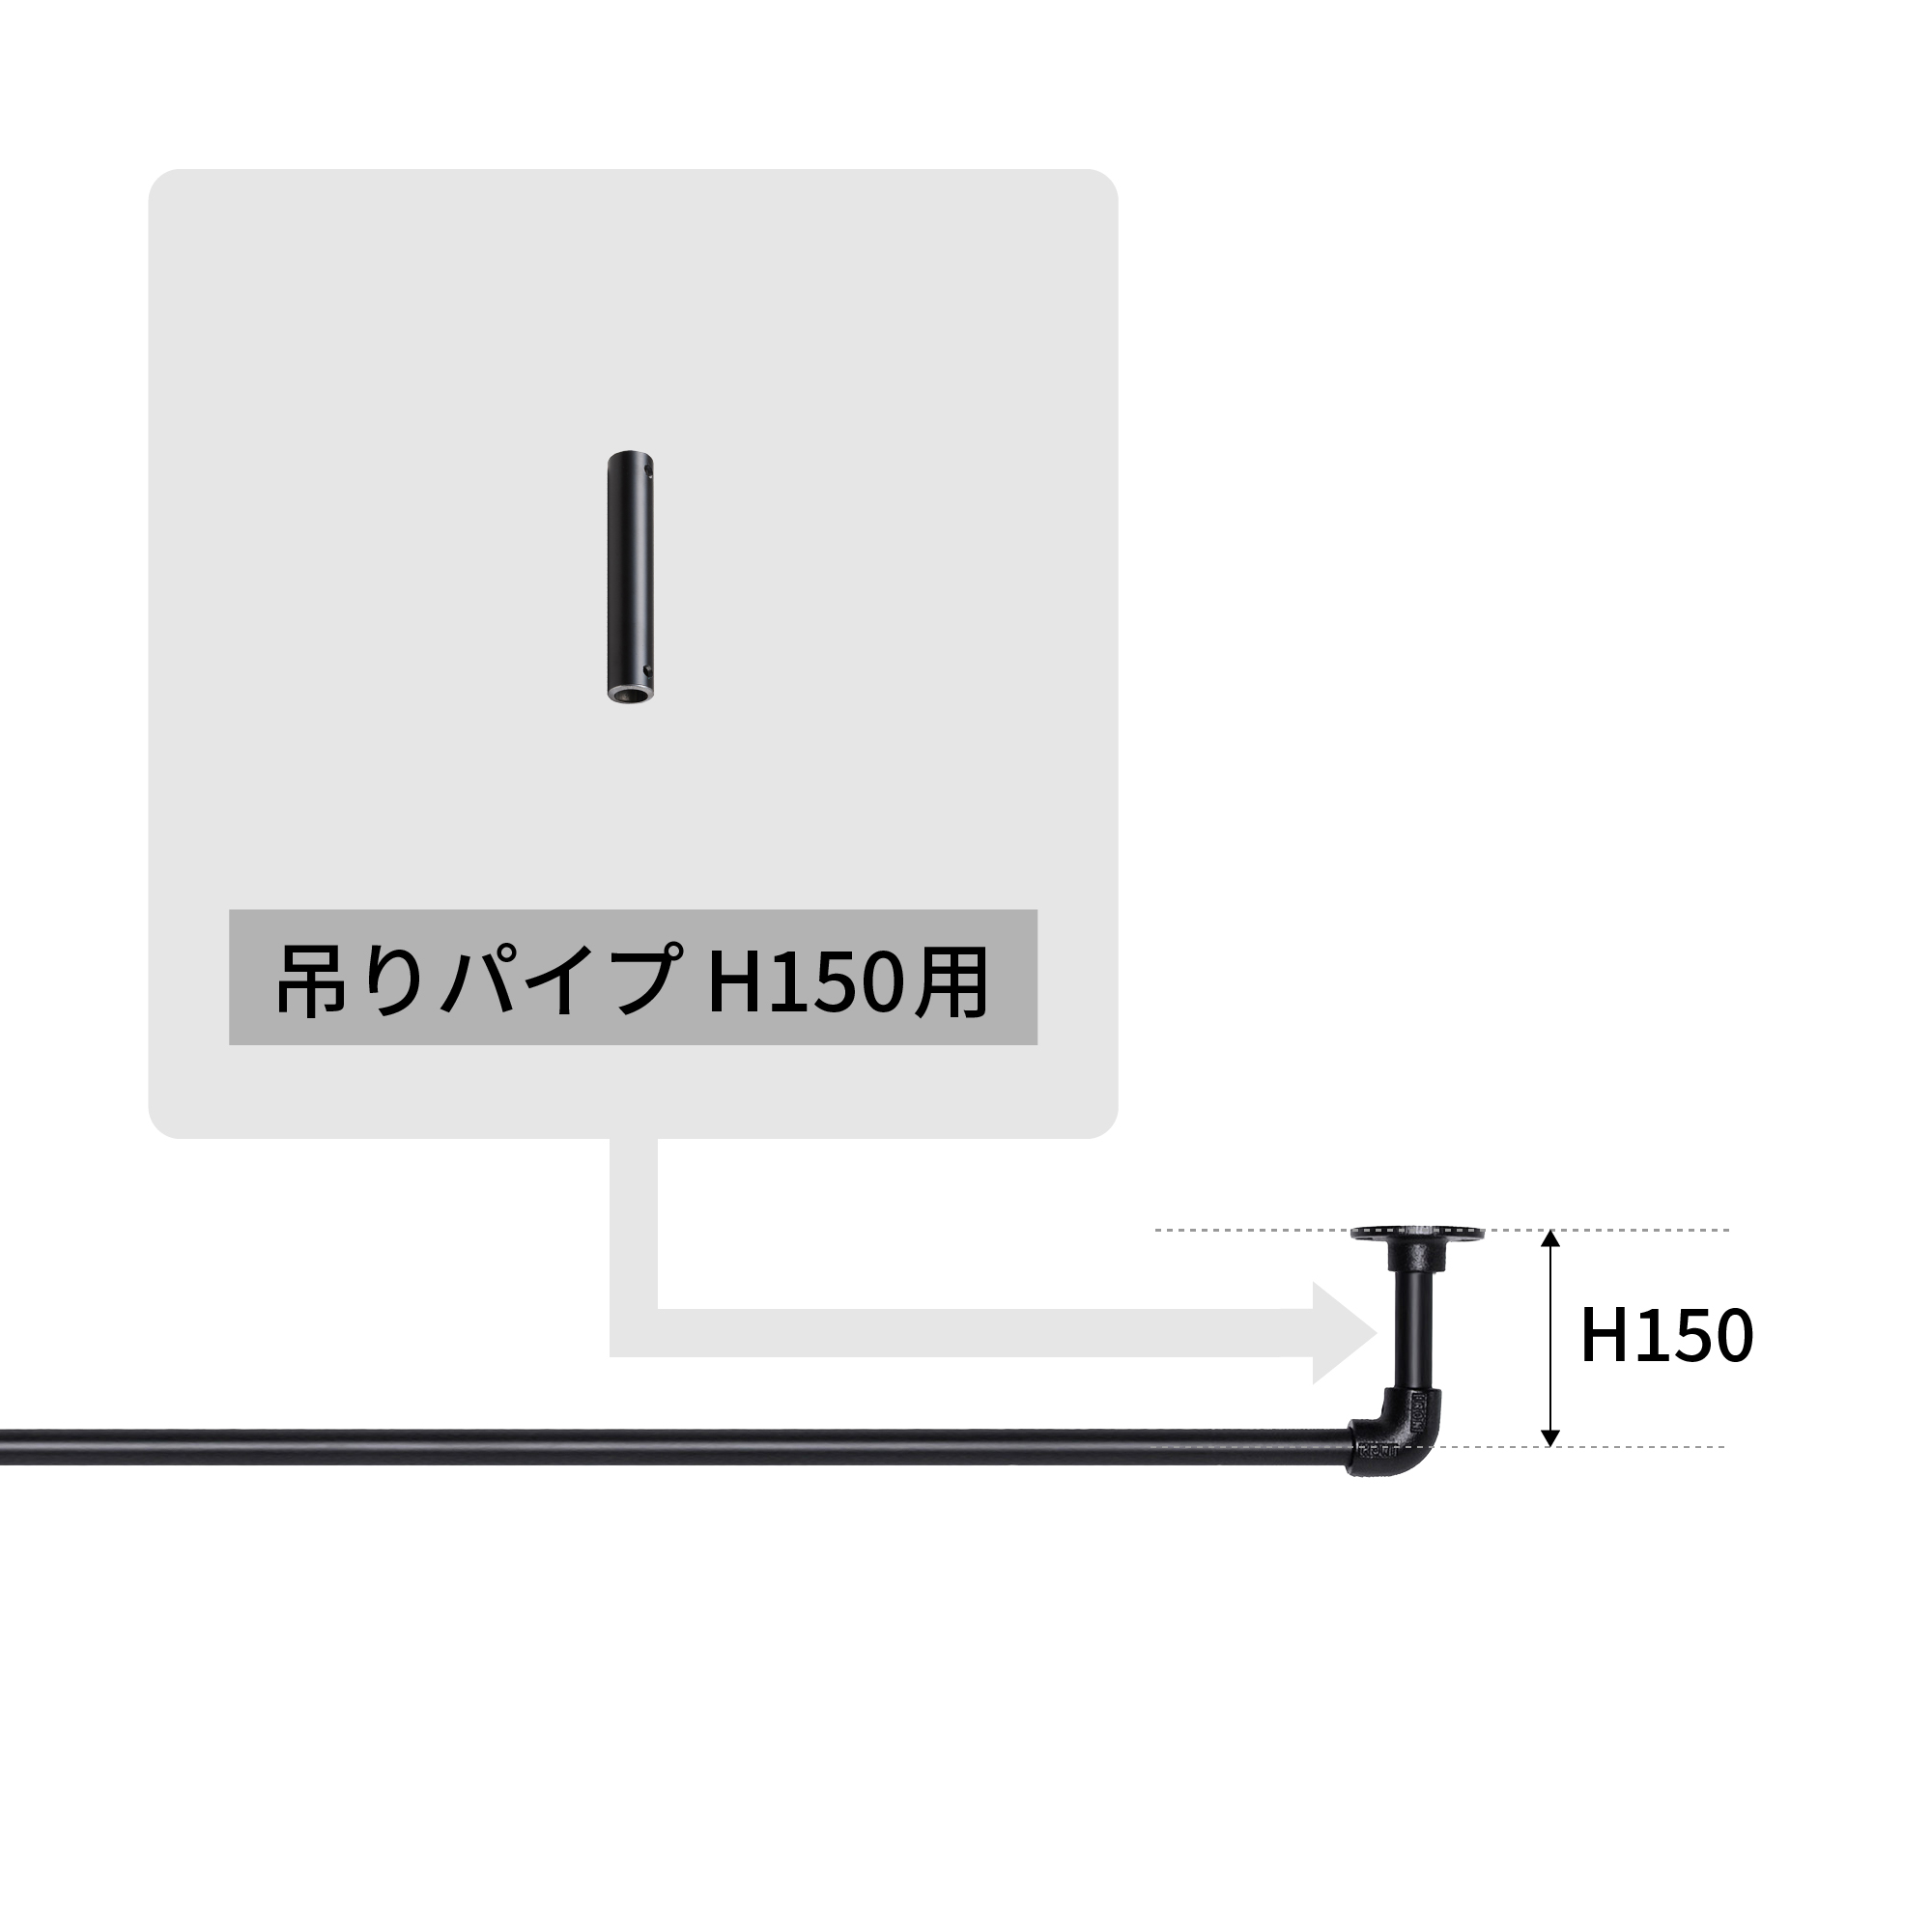 アイアンハンガーパイプ 吊りパイプ H150用 ホワイト PS-HB008-42-G141